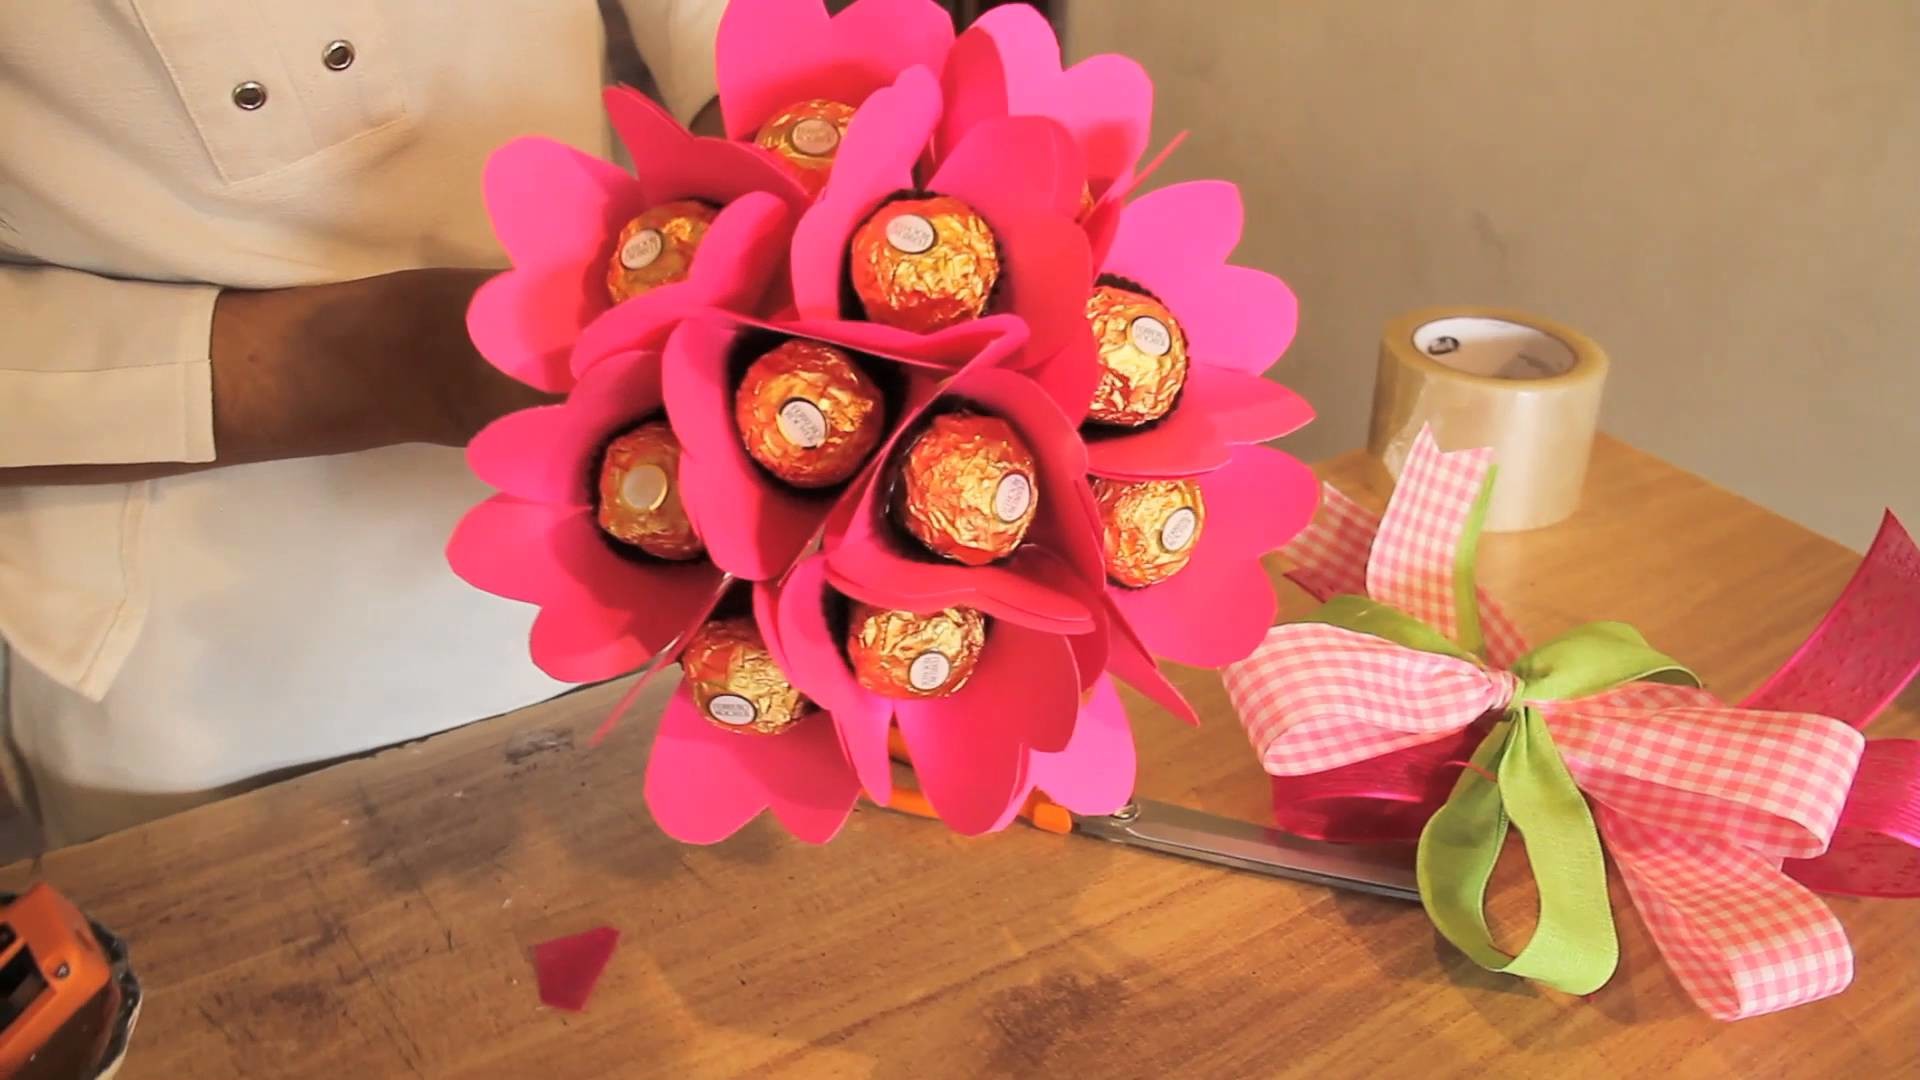 Bouquet de chocolates